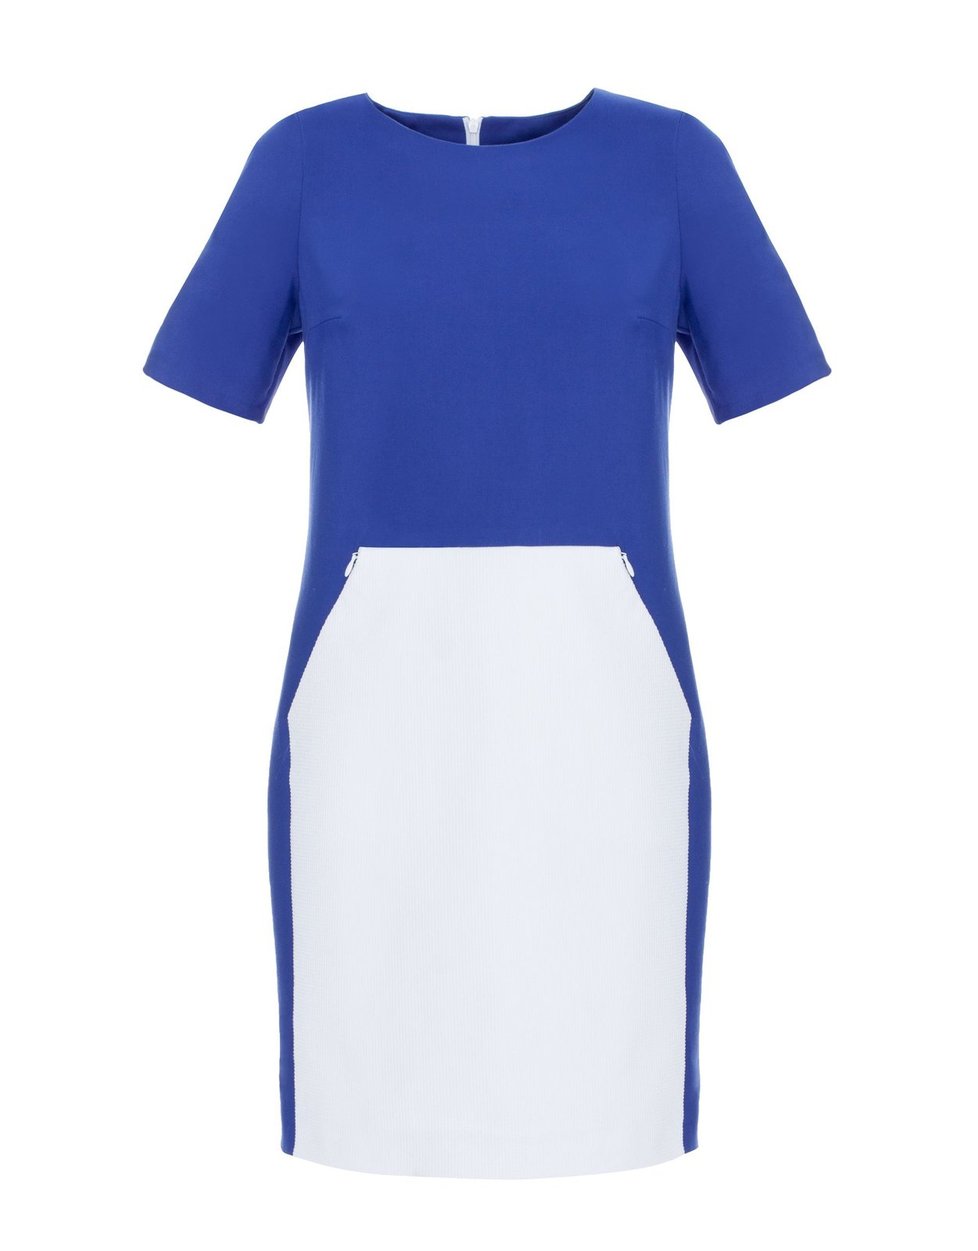 Originální modrobílé šaty, Mohito, info o ceně v obchodě.